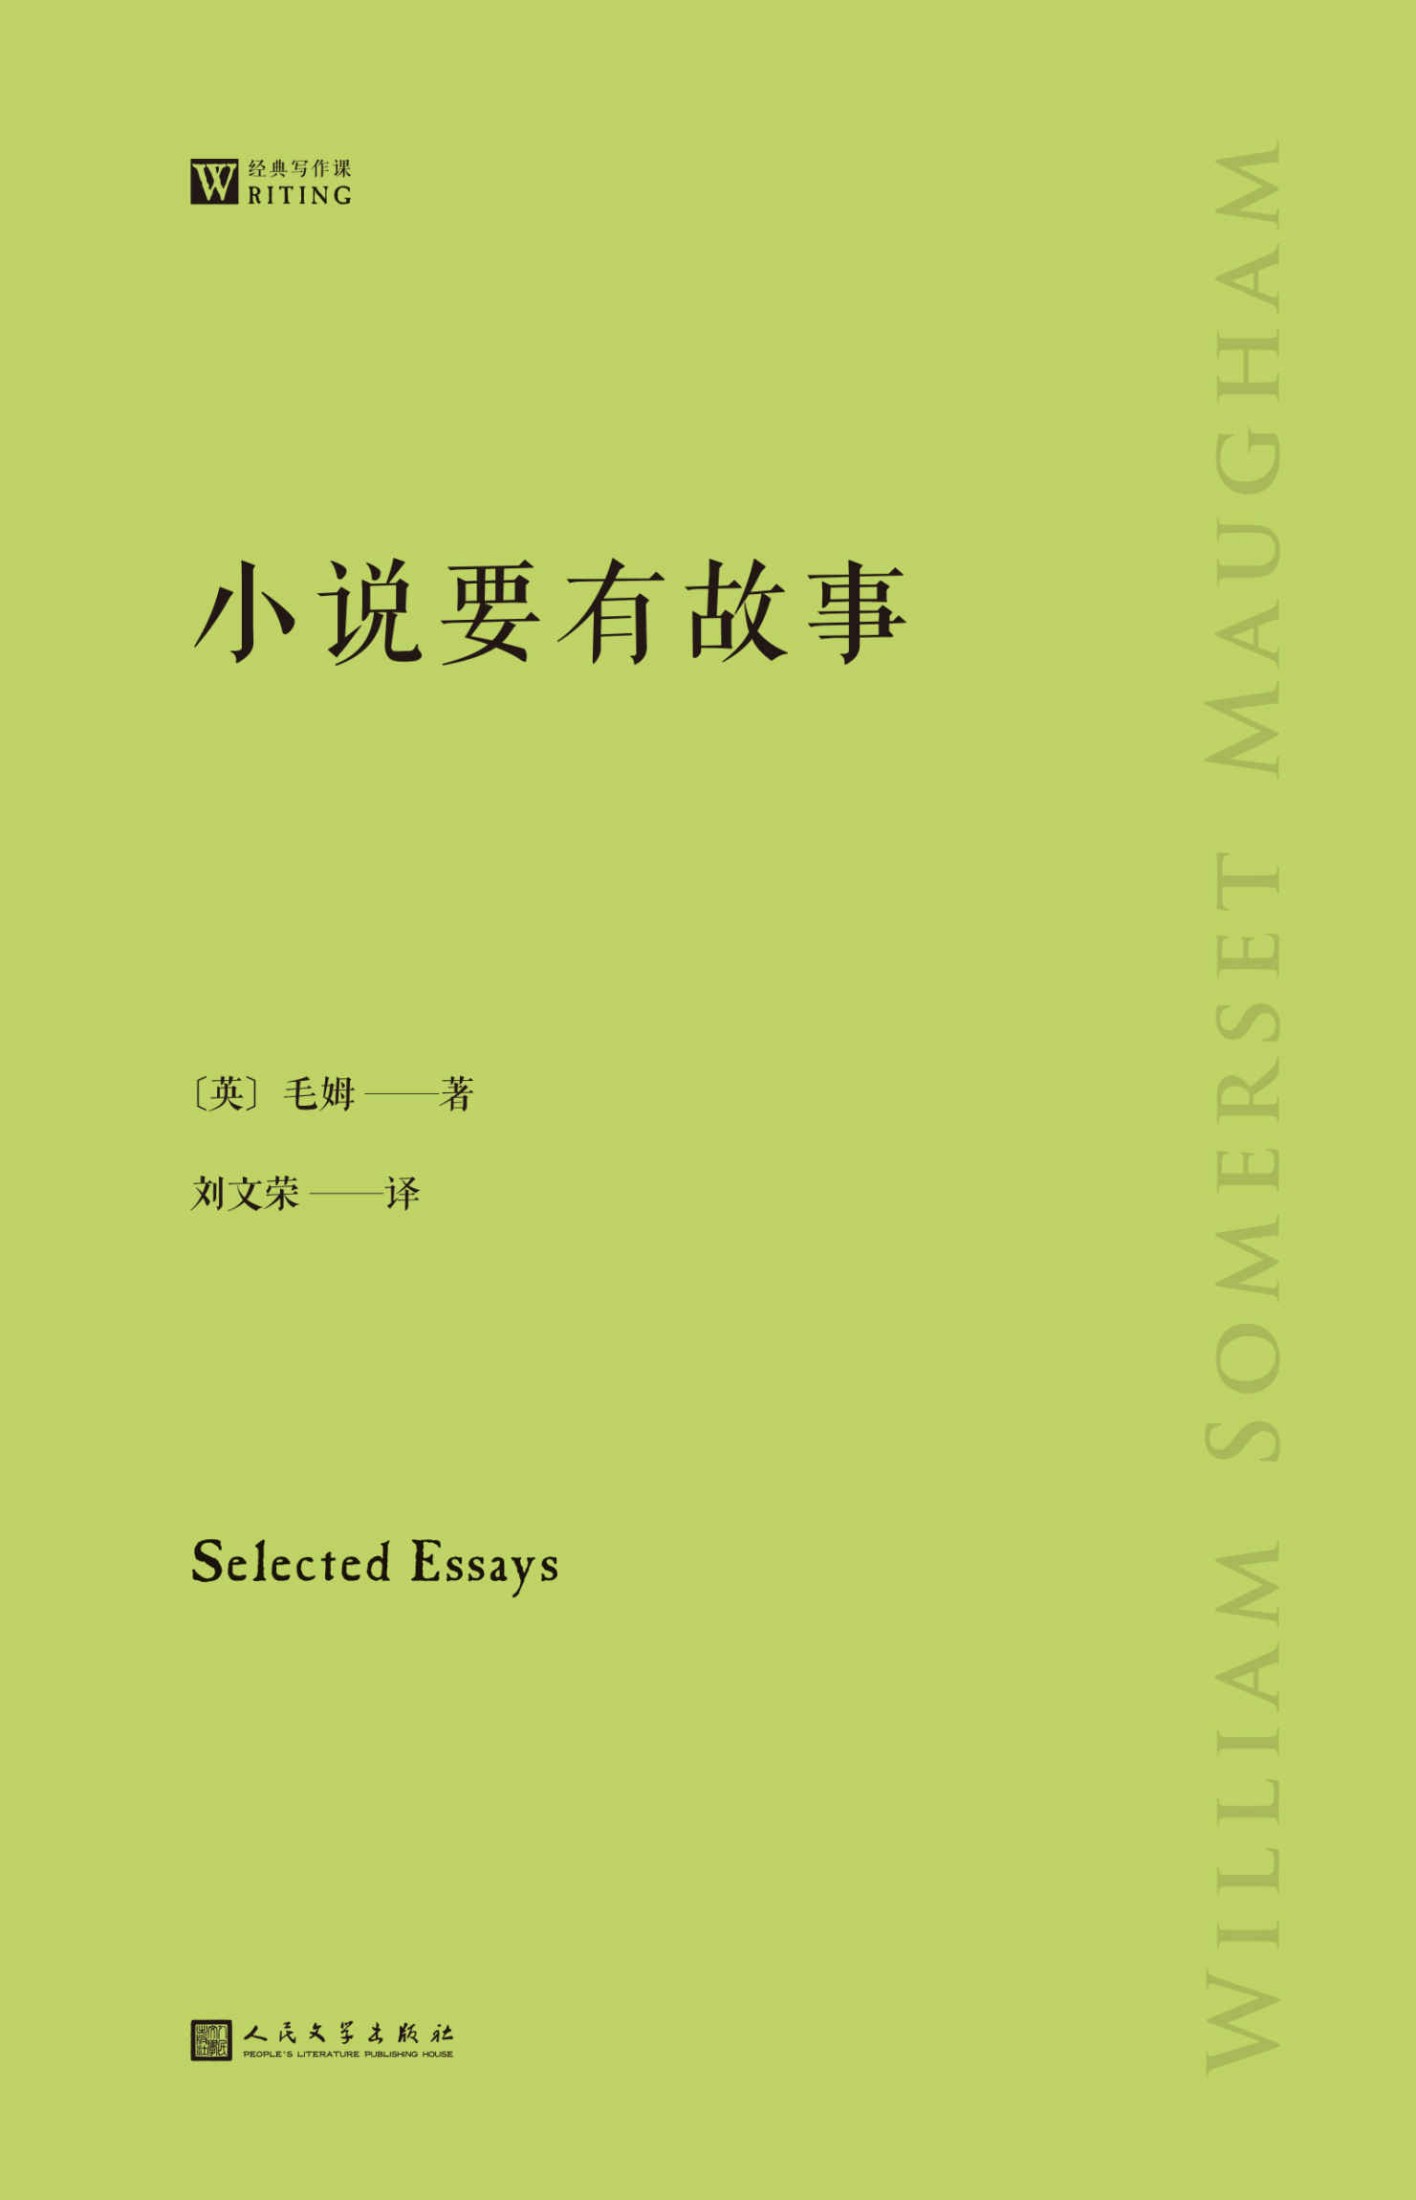 《小说要有故事》-azw3,mobi,epub,pdf,txt,kindle电子书免费下载